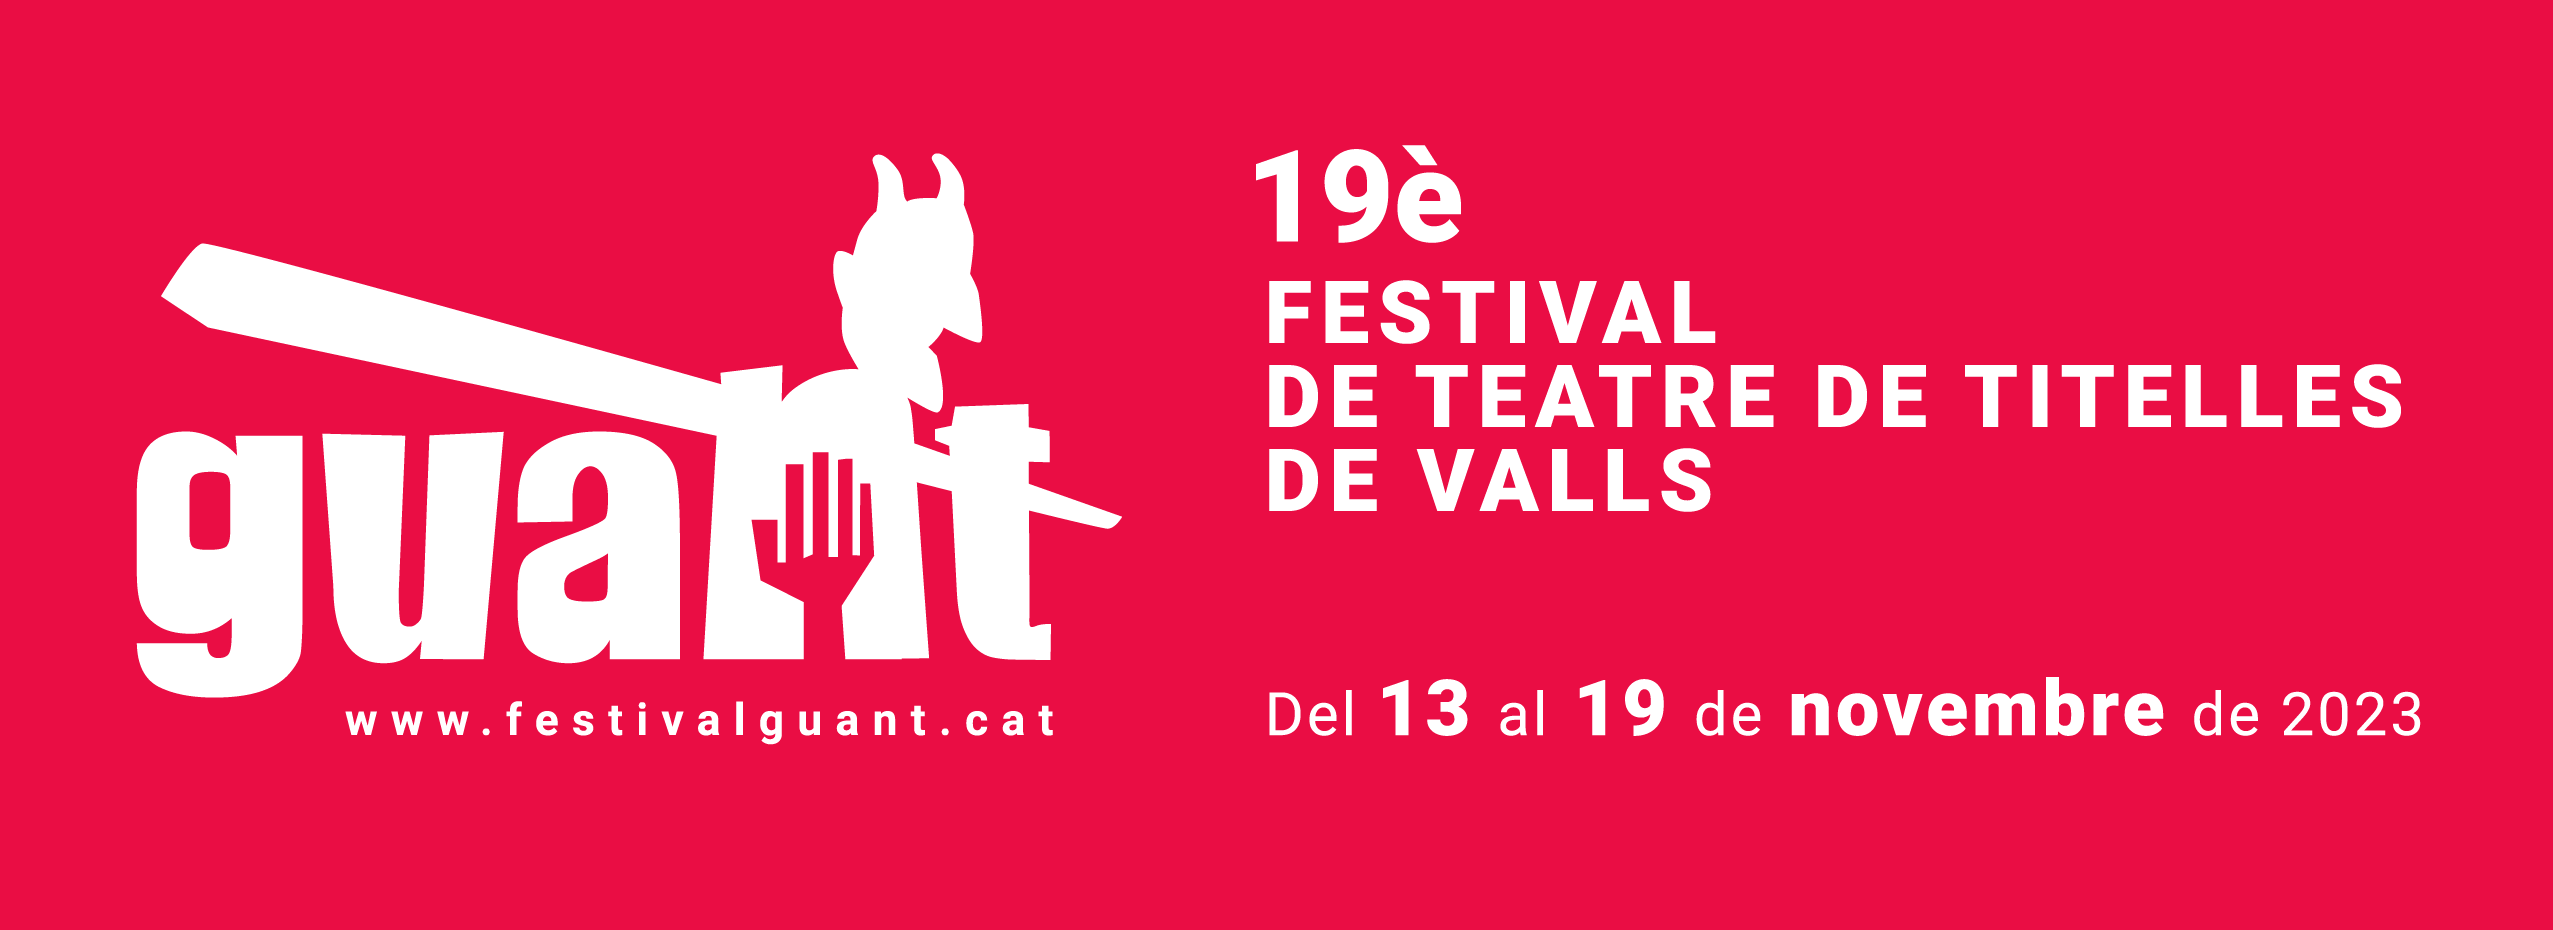 19è Festival internacional de teatre de titelles de Valls | Inici 2022